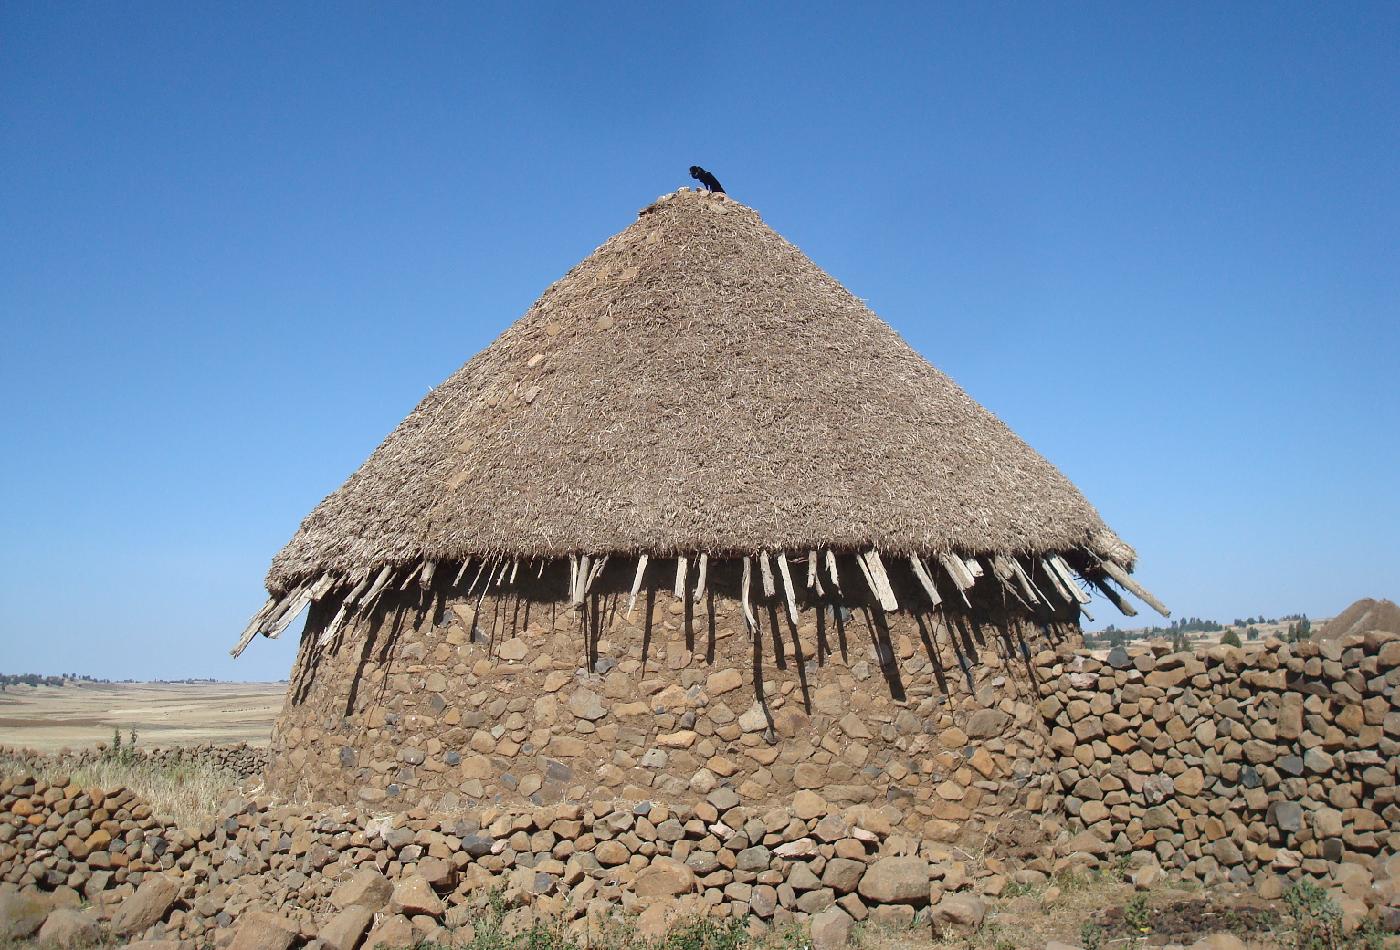 DSC036110.jpg - Un tukul, case circulaire en pierres et torchis avec un toit de chaume